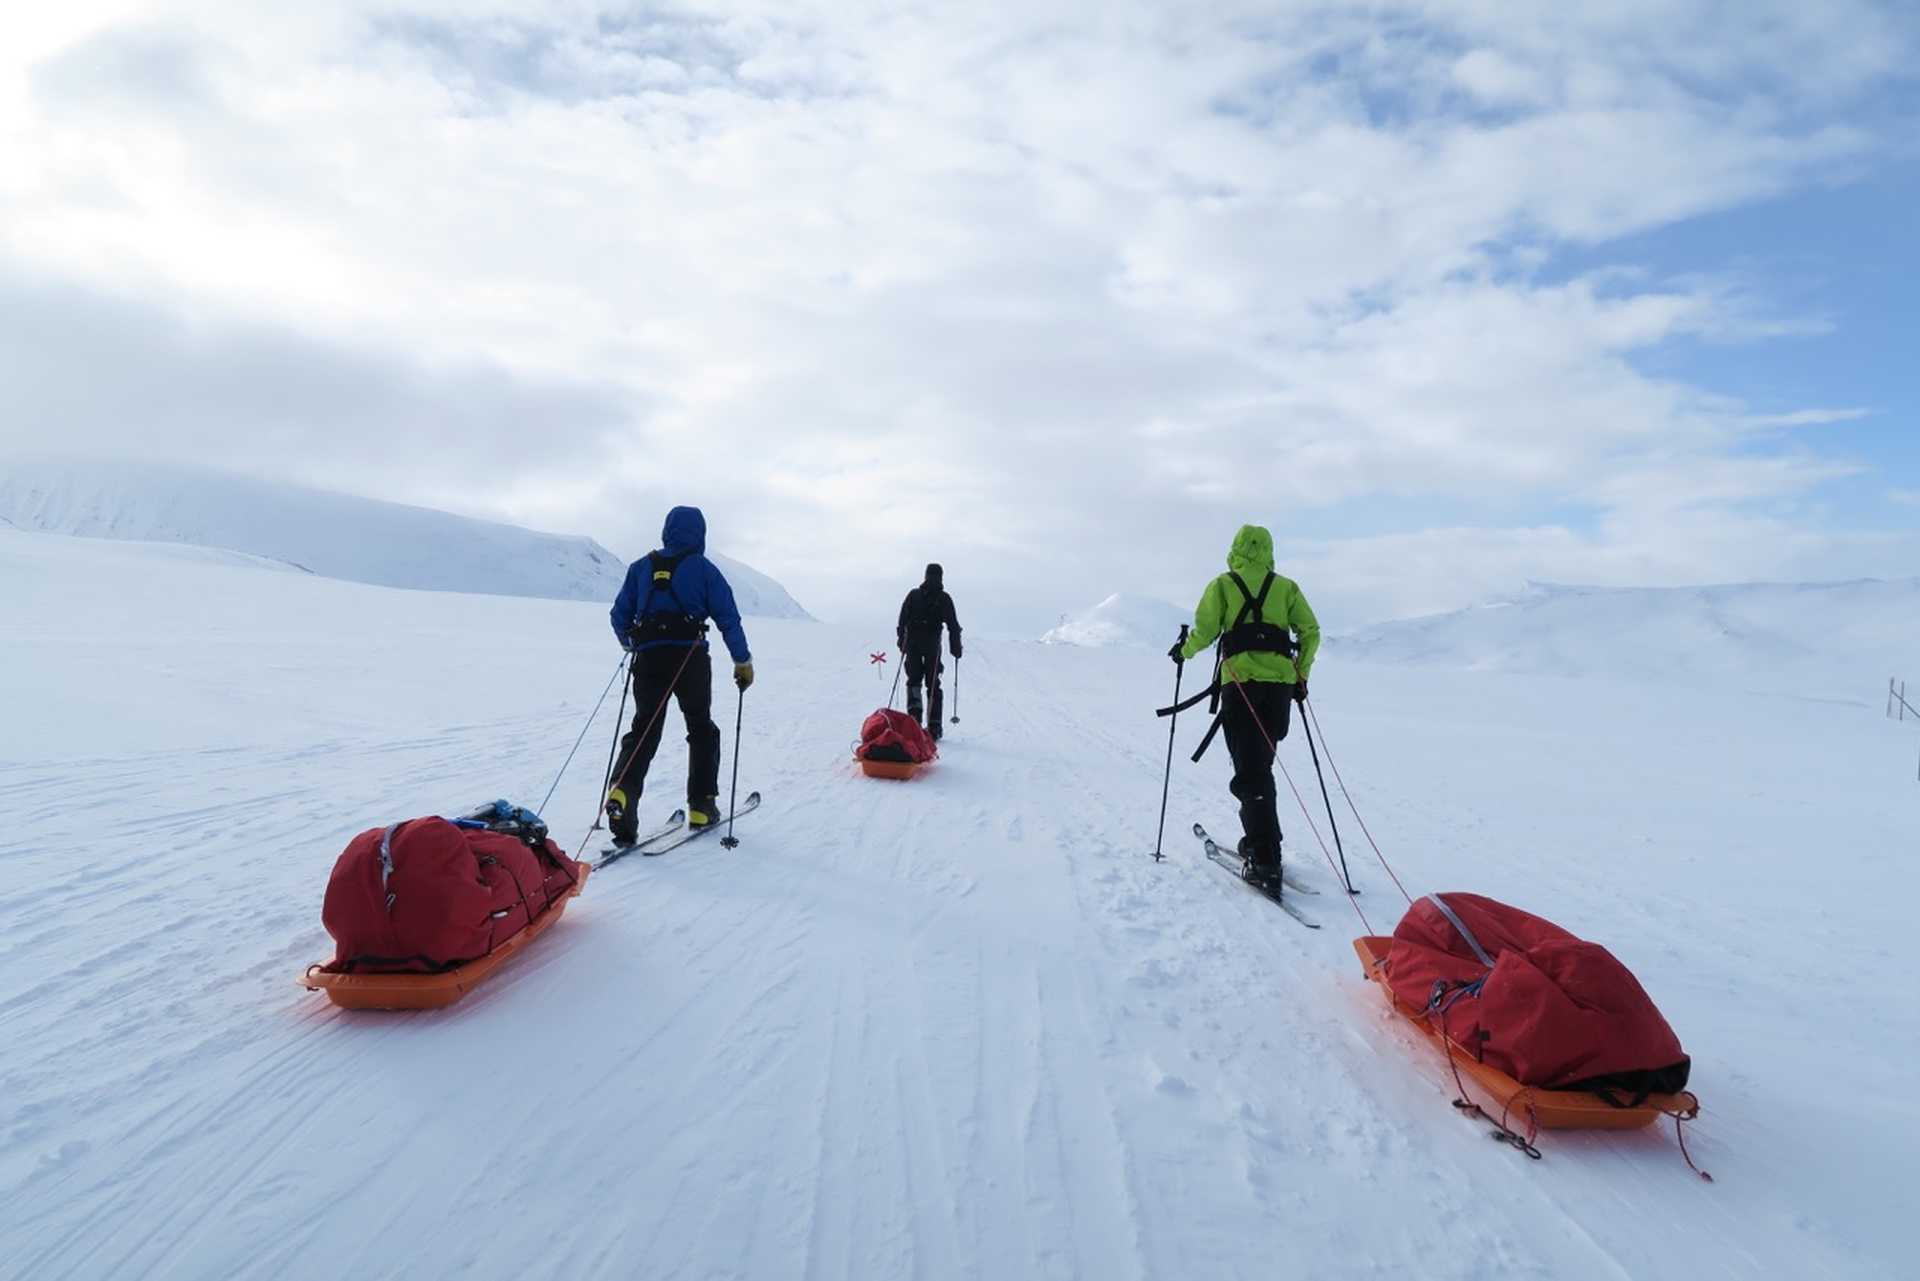 Voyage ski de fond / ski nordique - itinerance hivernale sur la voie royale